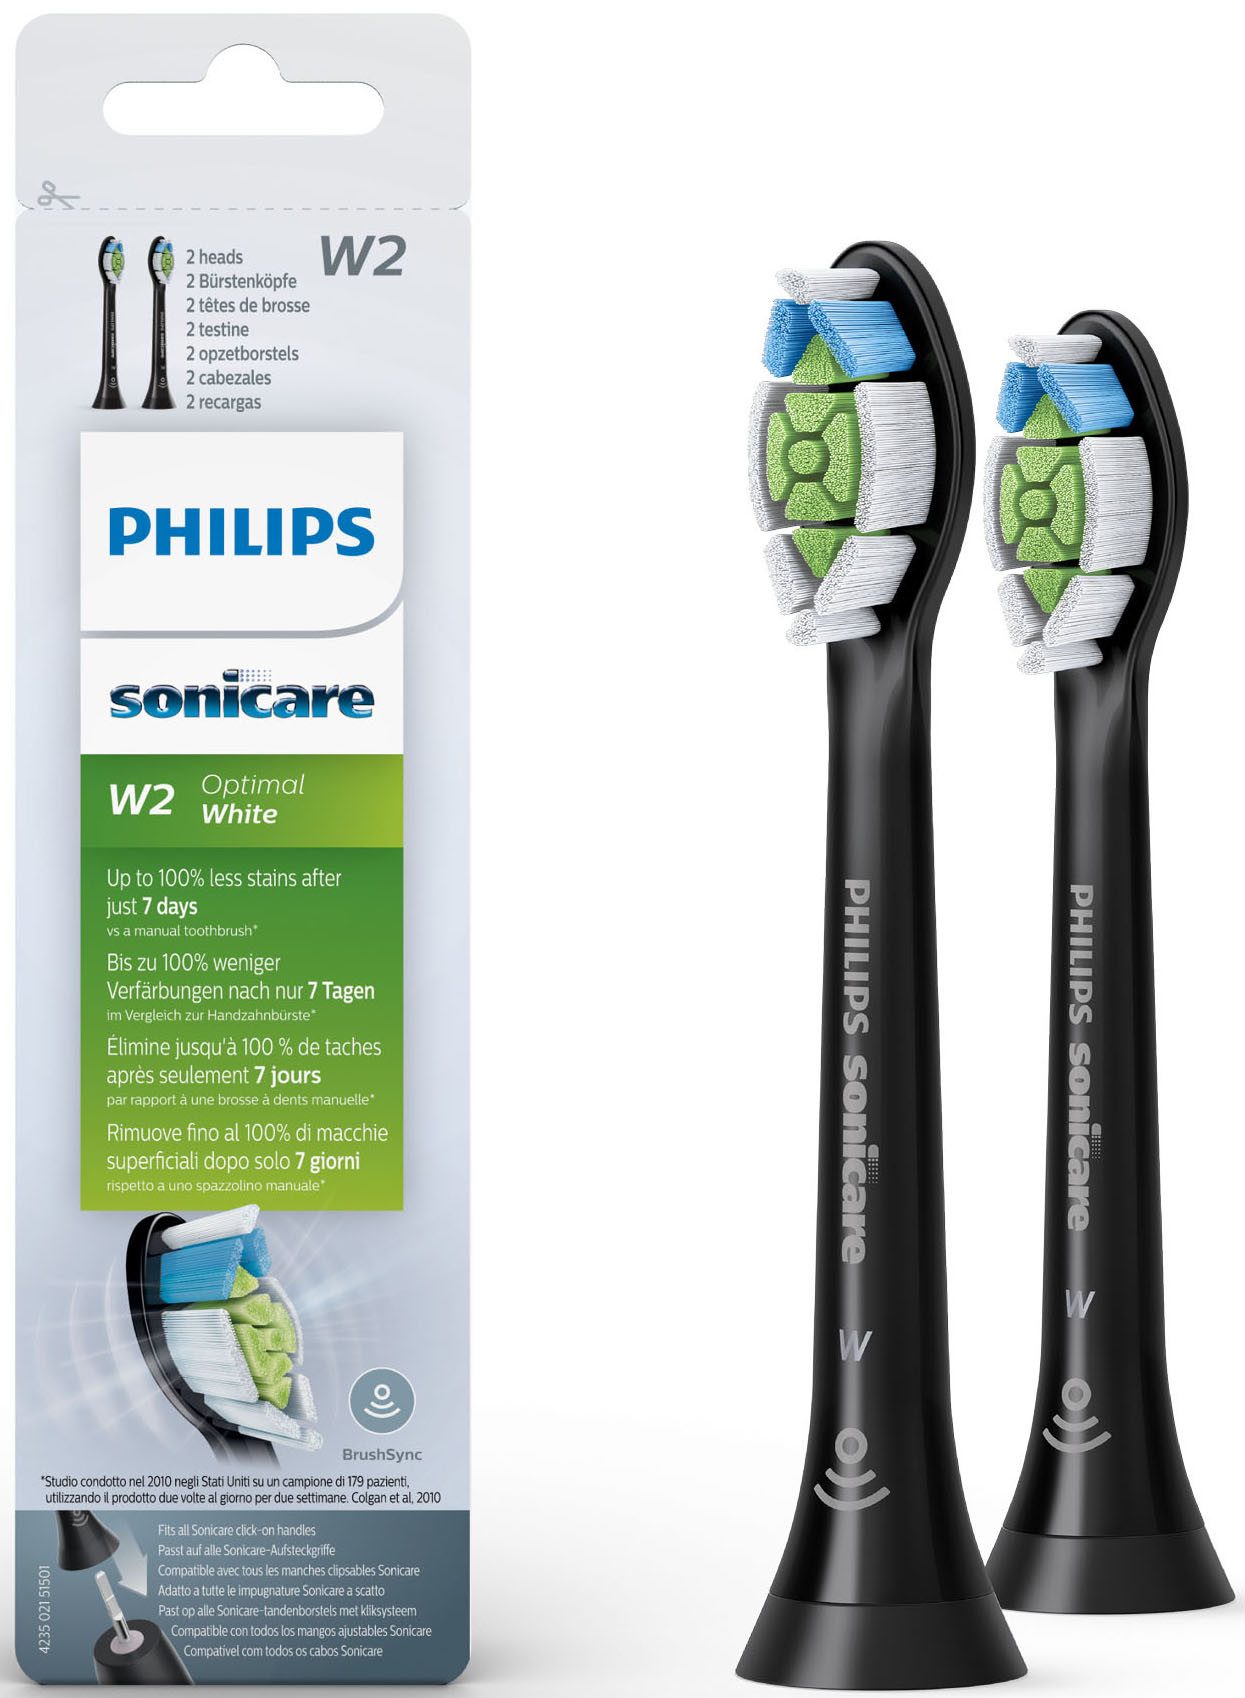 Philips Sonicare Aufsteckbürsten Standard W2 Optimal White HX6062, mit der Bürstenkopferkennung, Standardgröße